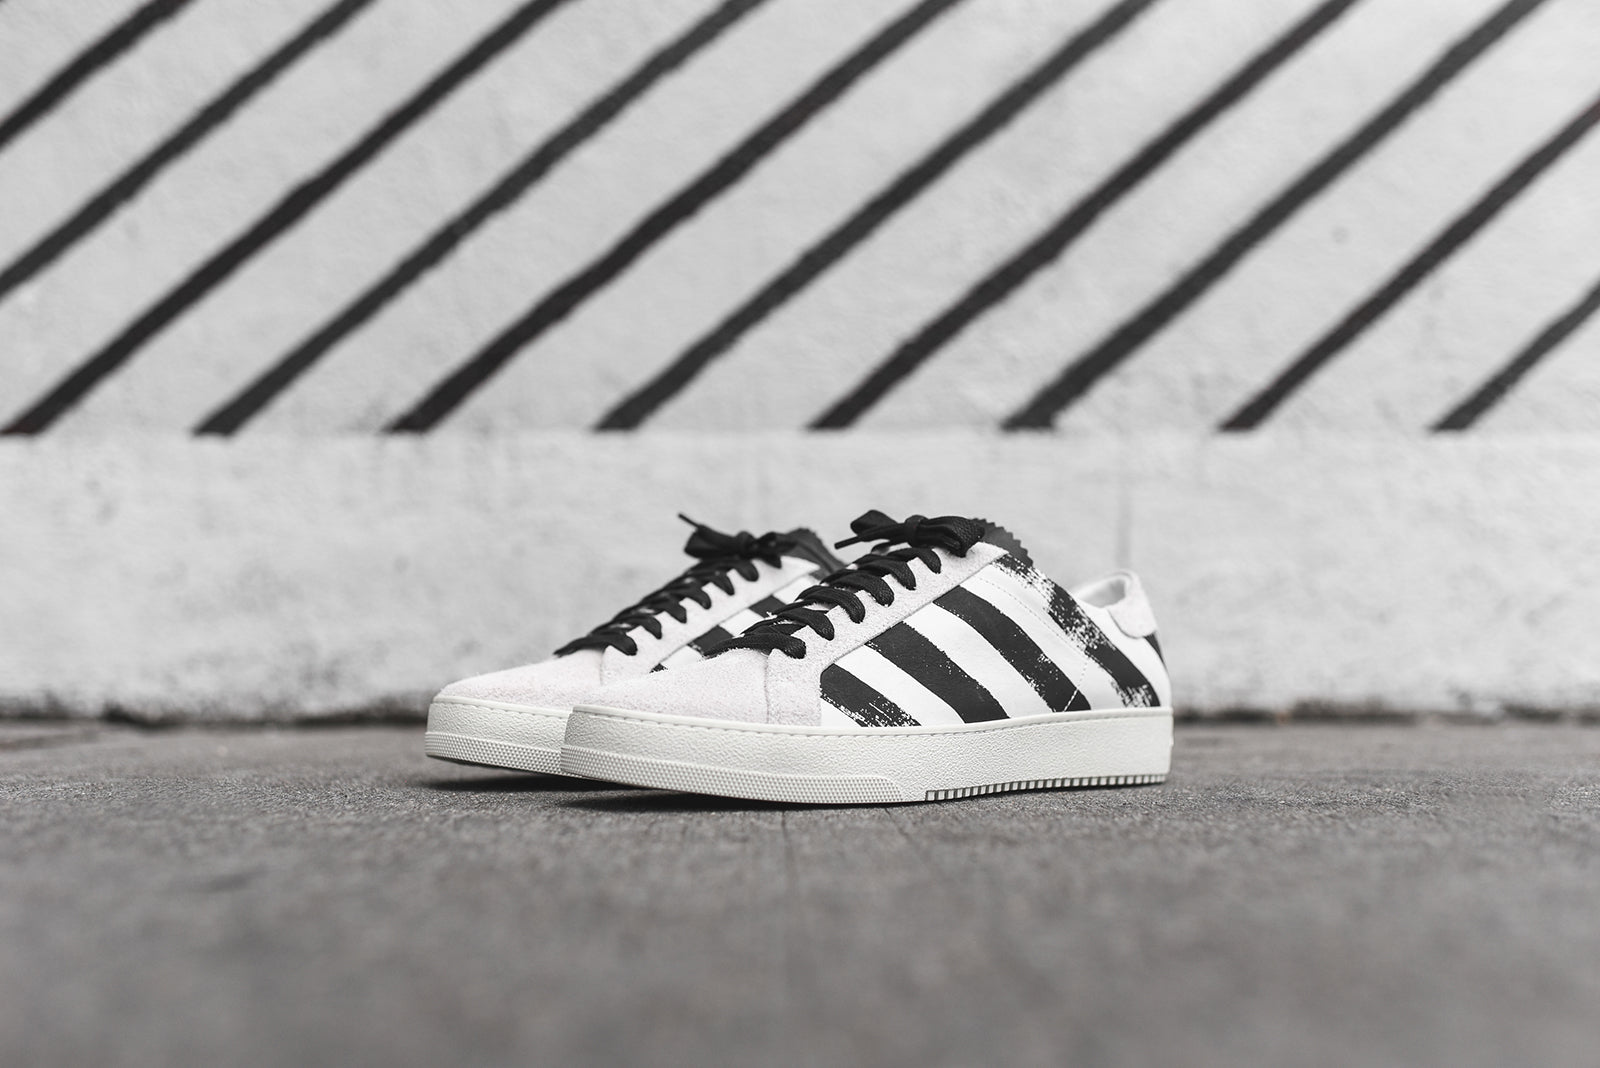 Fila Orbit Stripe - White Sneakers - Multi Striped Sneakers - Lulus